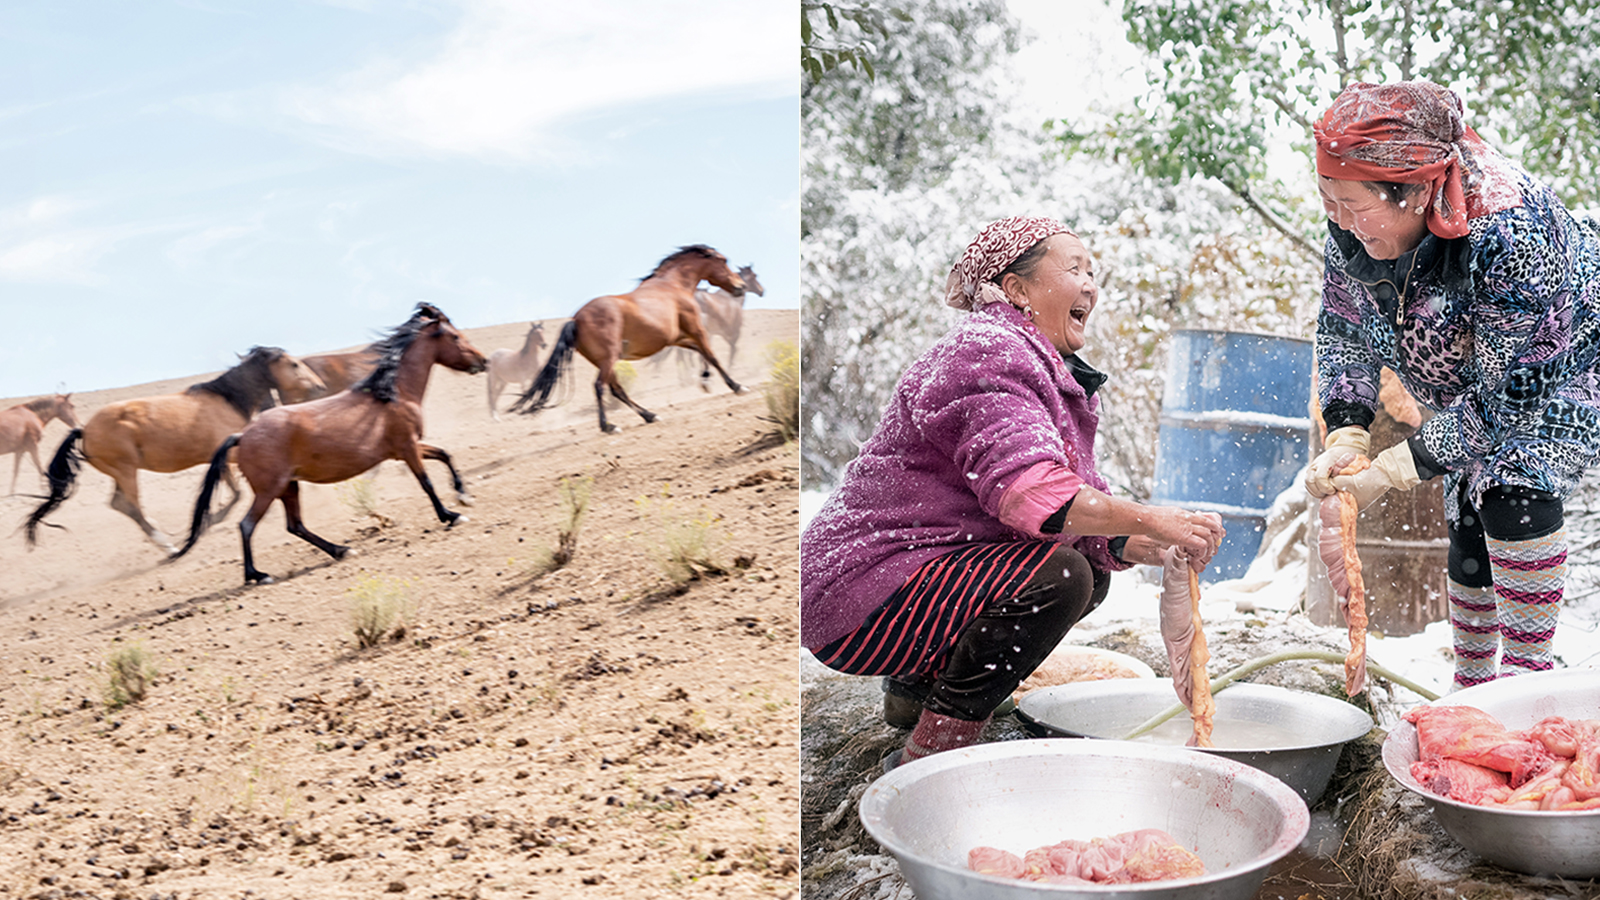 Aanleg Geelachtig Noodlottig Foto's van de wereldwijde tradities en taboes rond paardenvlees